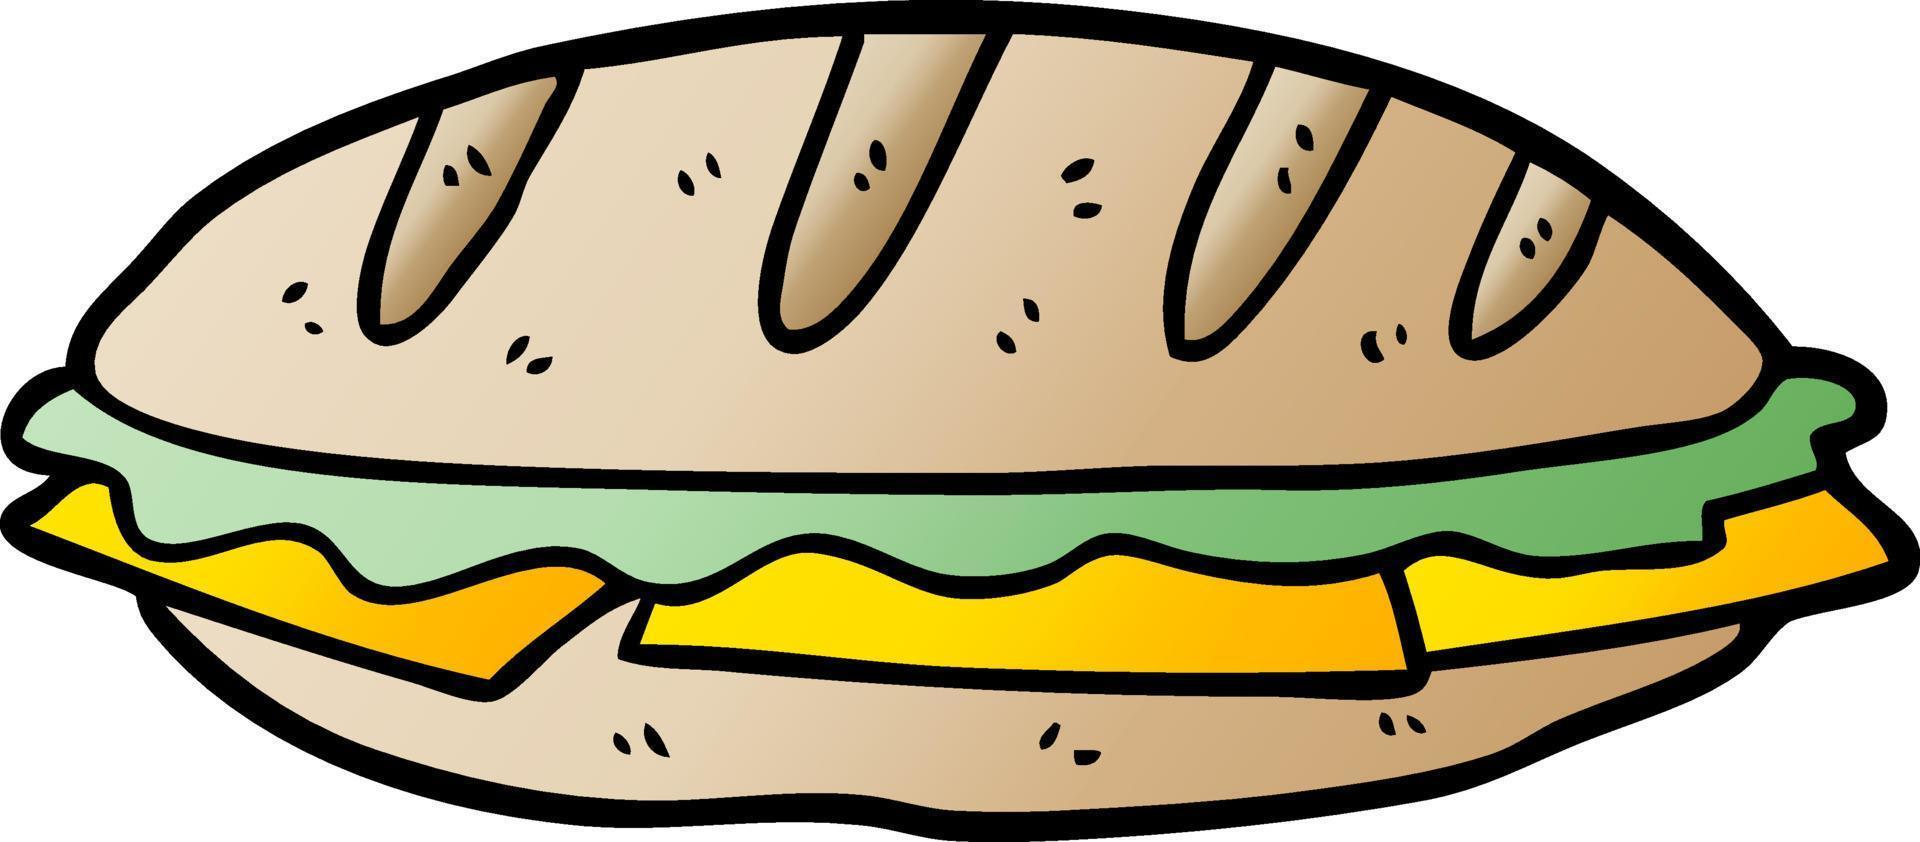 Cartoon-Schach-Sandwich vektor